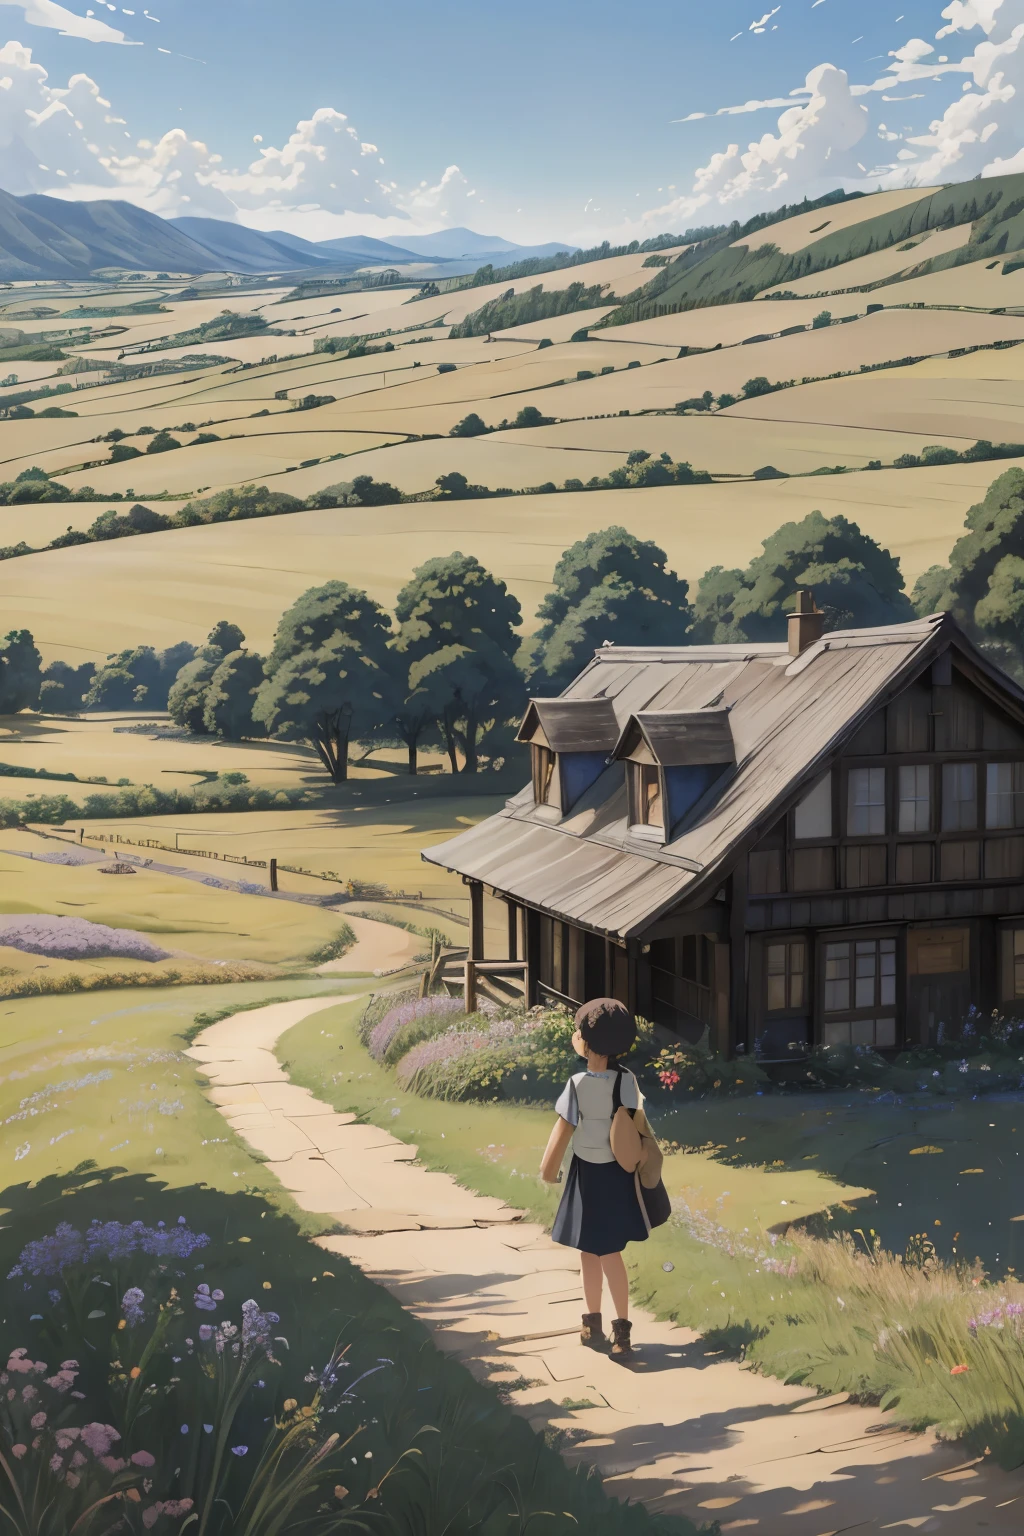 реалистичный, настоящий, Красивый и потрясающий пейзаж картина маслом Студия Ghibli Хаяо Миядзаки Лепестки Луга Голубое небо Луга Проселочная дорога,здание, красивая девушка